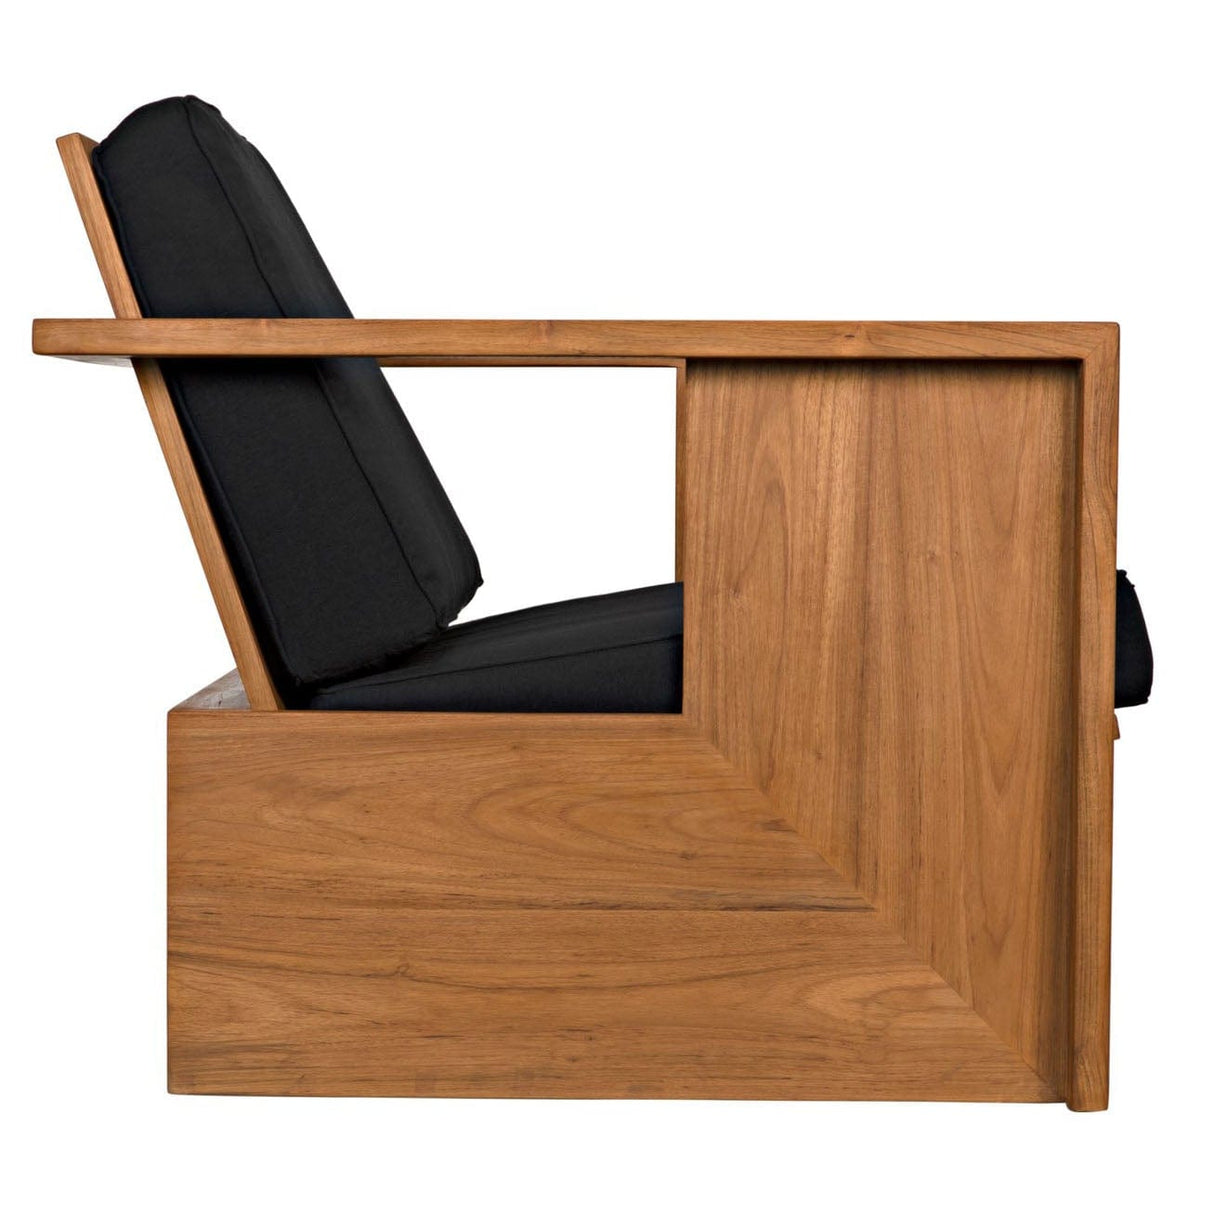 Noir Ungardo Chair Furniture noir-AE-219T 00842449131415